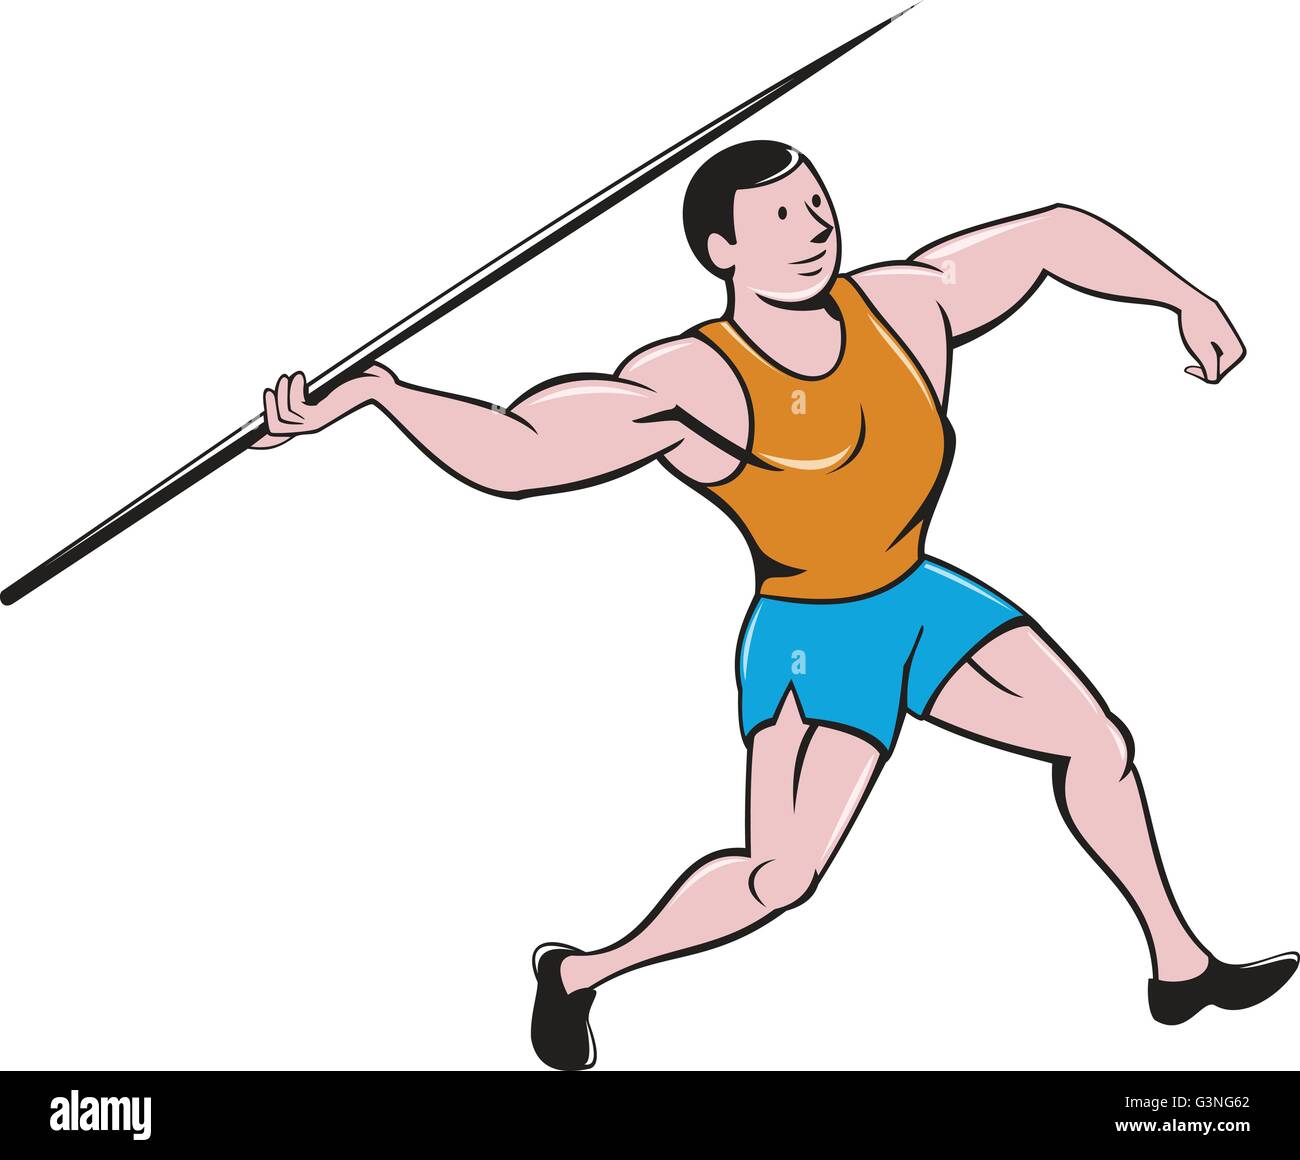 Illustration d'un athlétisme lancer du javelot vu de côté situé sur fond blanc isolé fait en style cartoon. Illustration de Vecteur